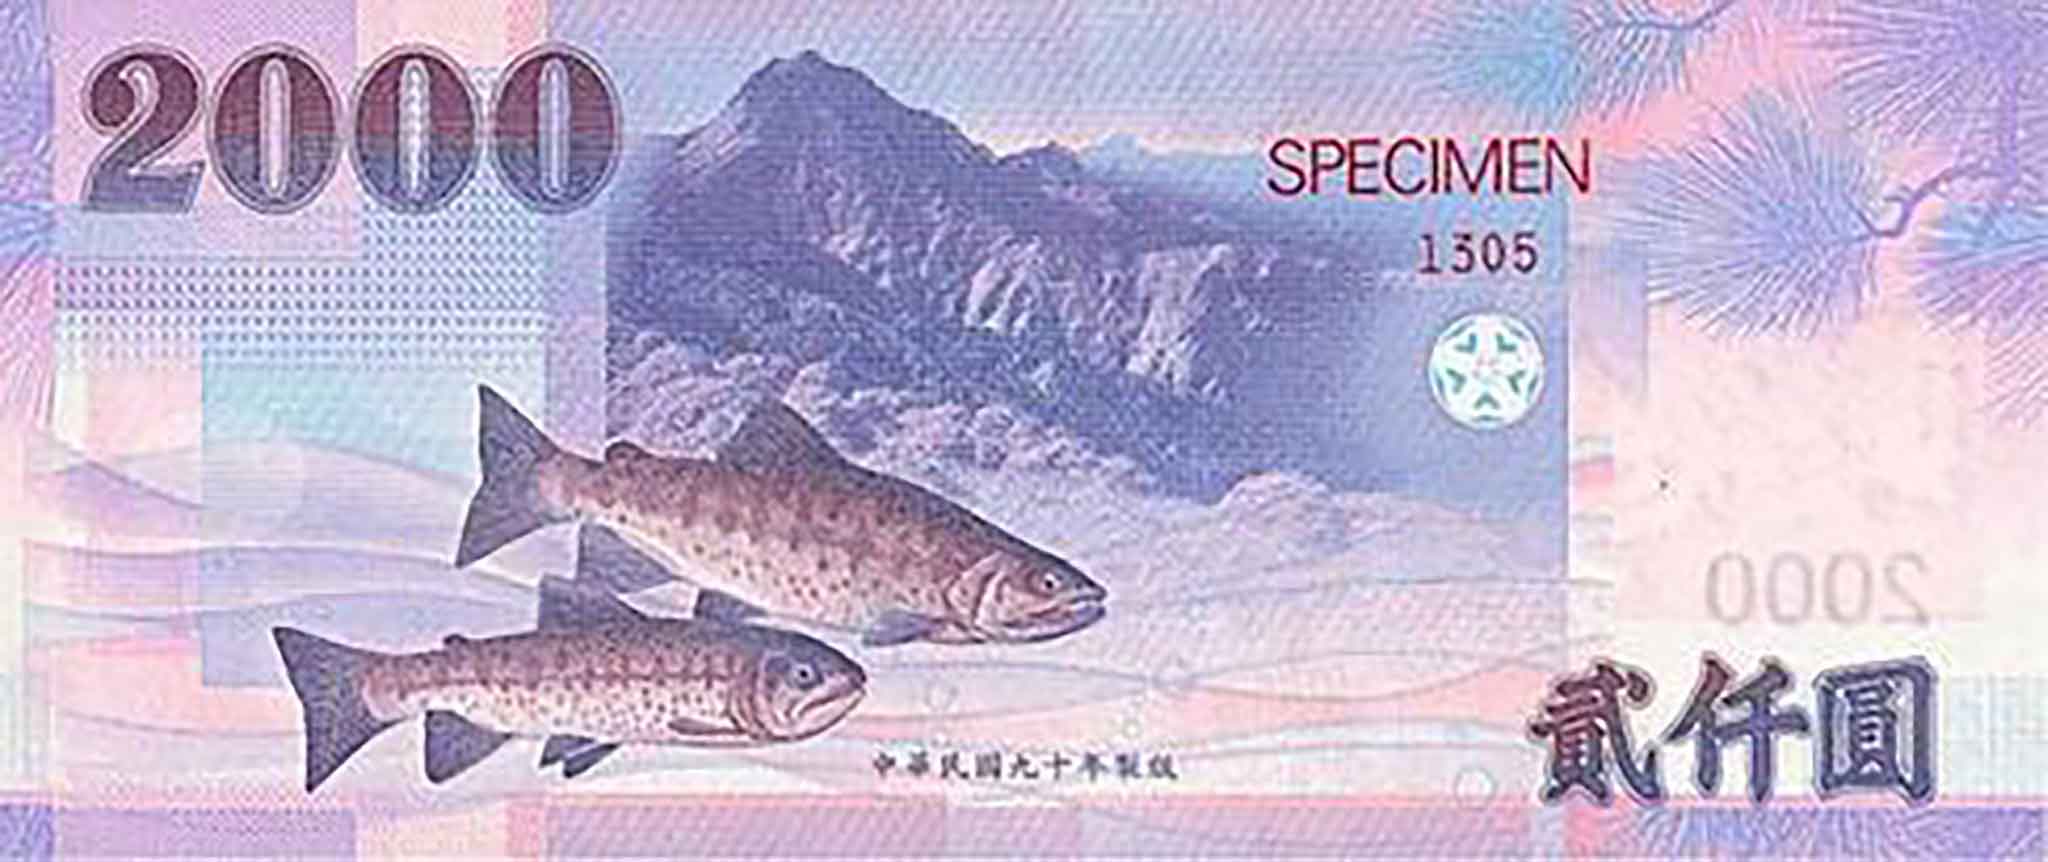 二千元鈔券上印有櫻花鉤吻鮭